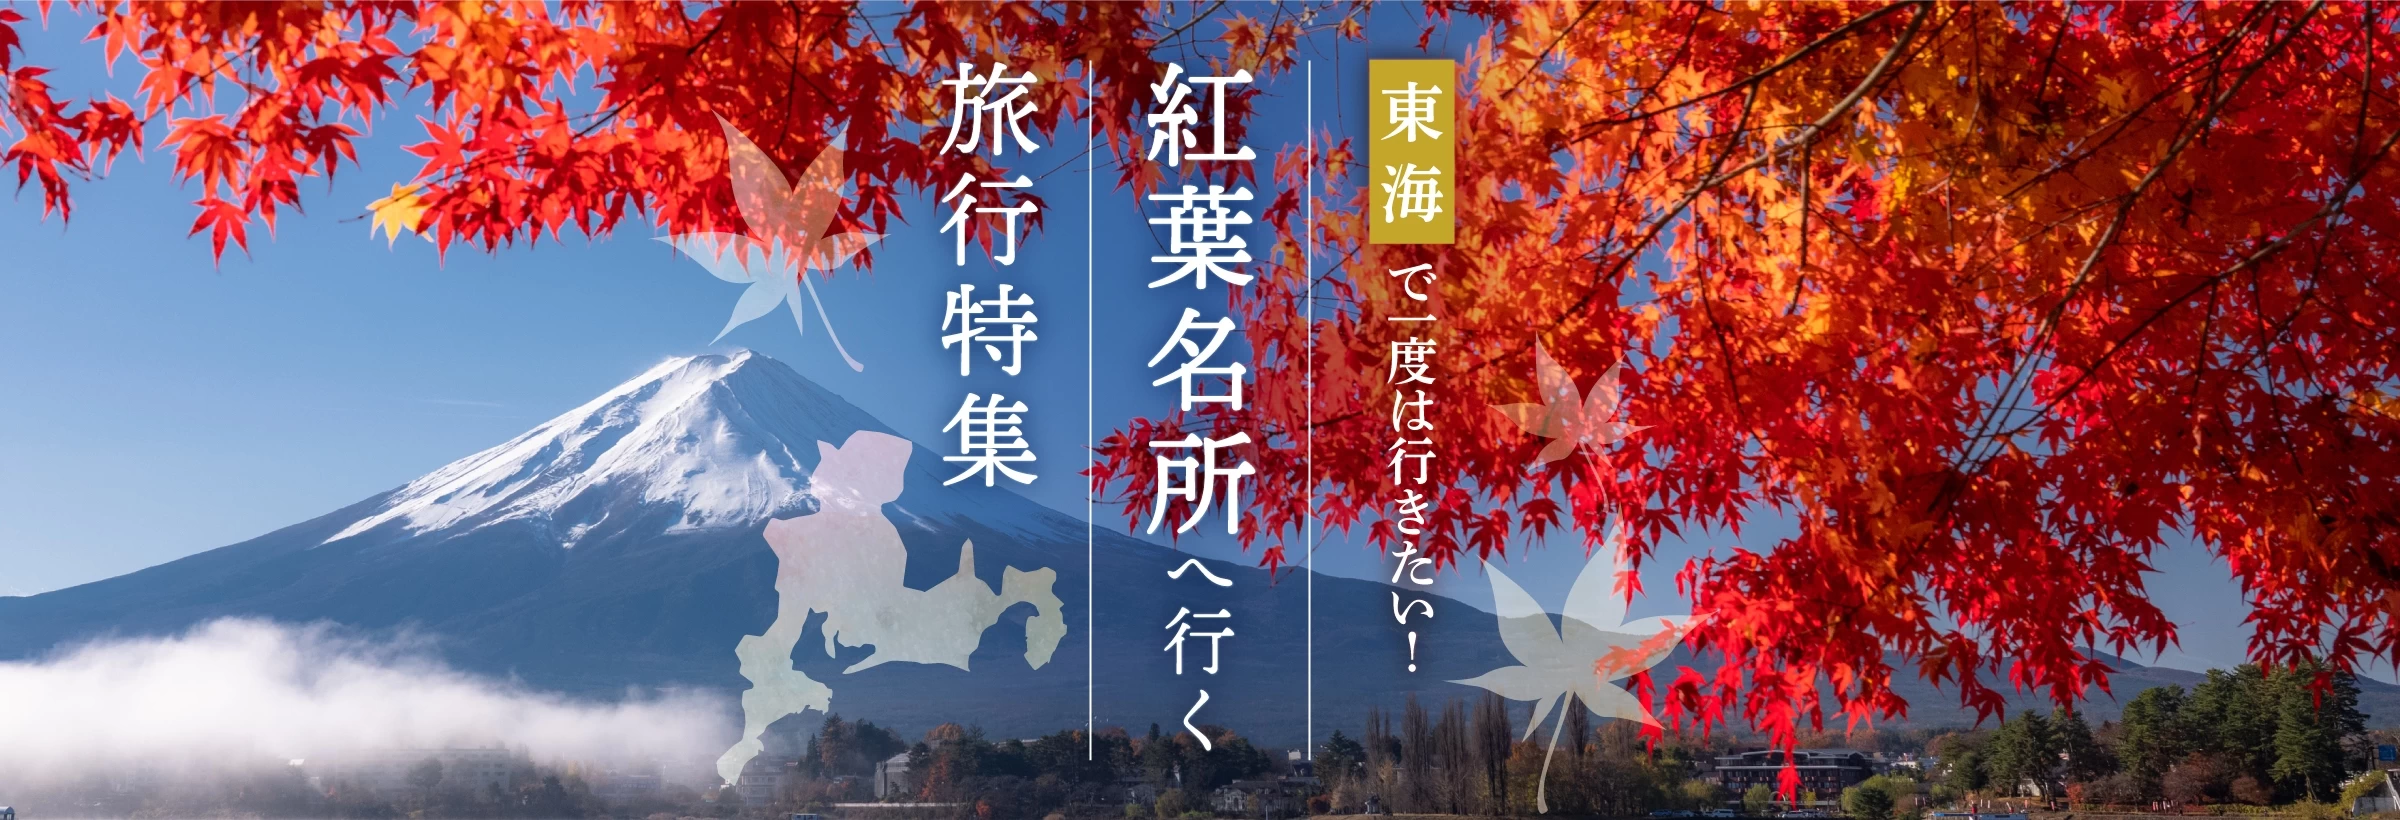 日本の真ん中に位置しており、四季のバランスが良い東海エリア。秋になると鮮やかな紅葉が各所に現れます。「紅葉」を眺め癒やしの時間を過ごせる旅行プランをご紹介します。